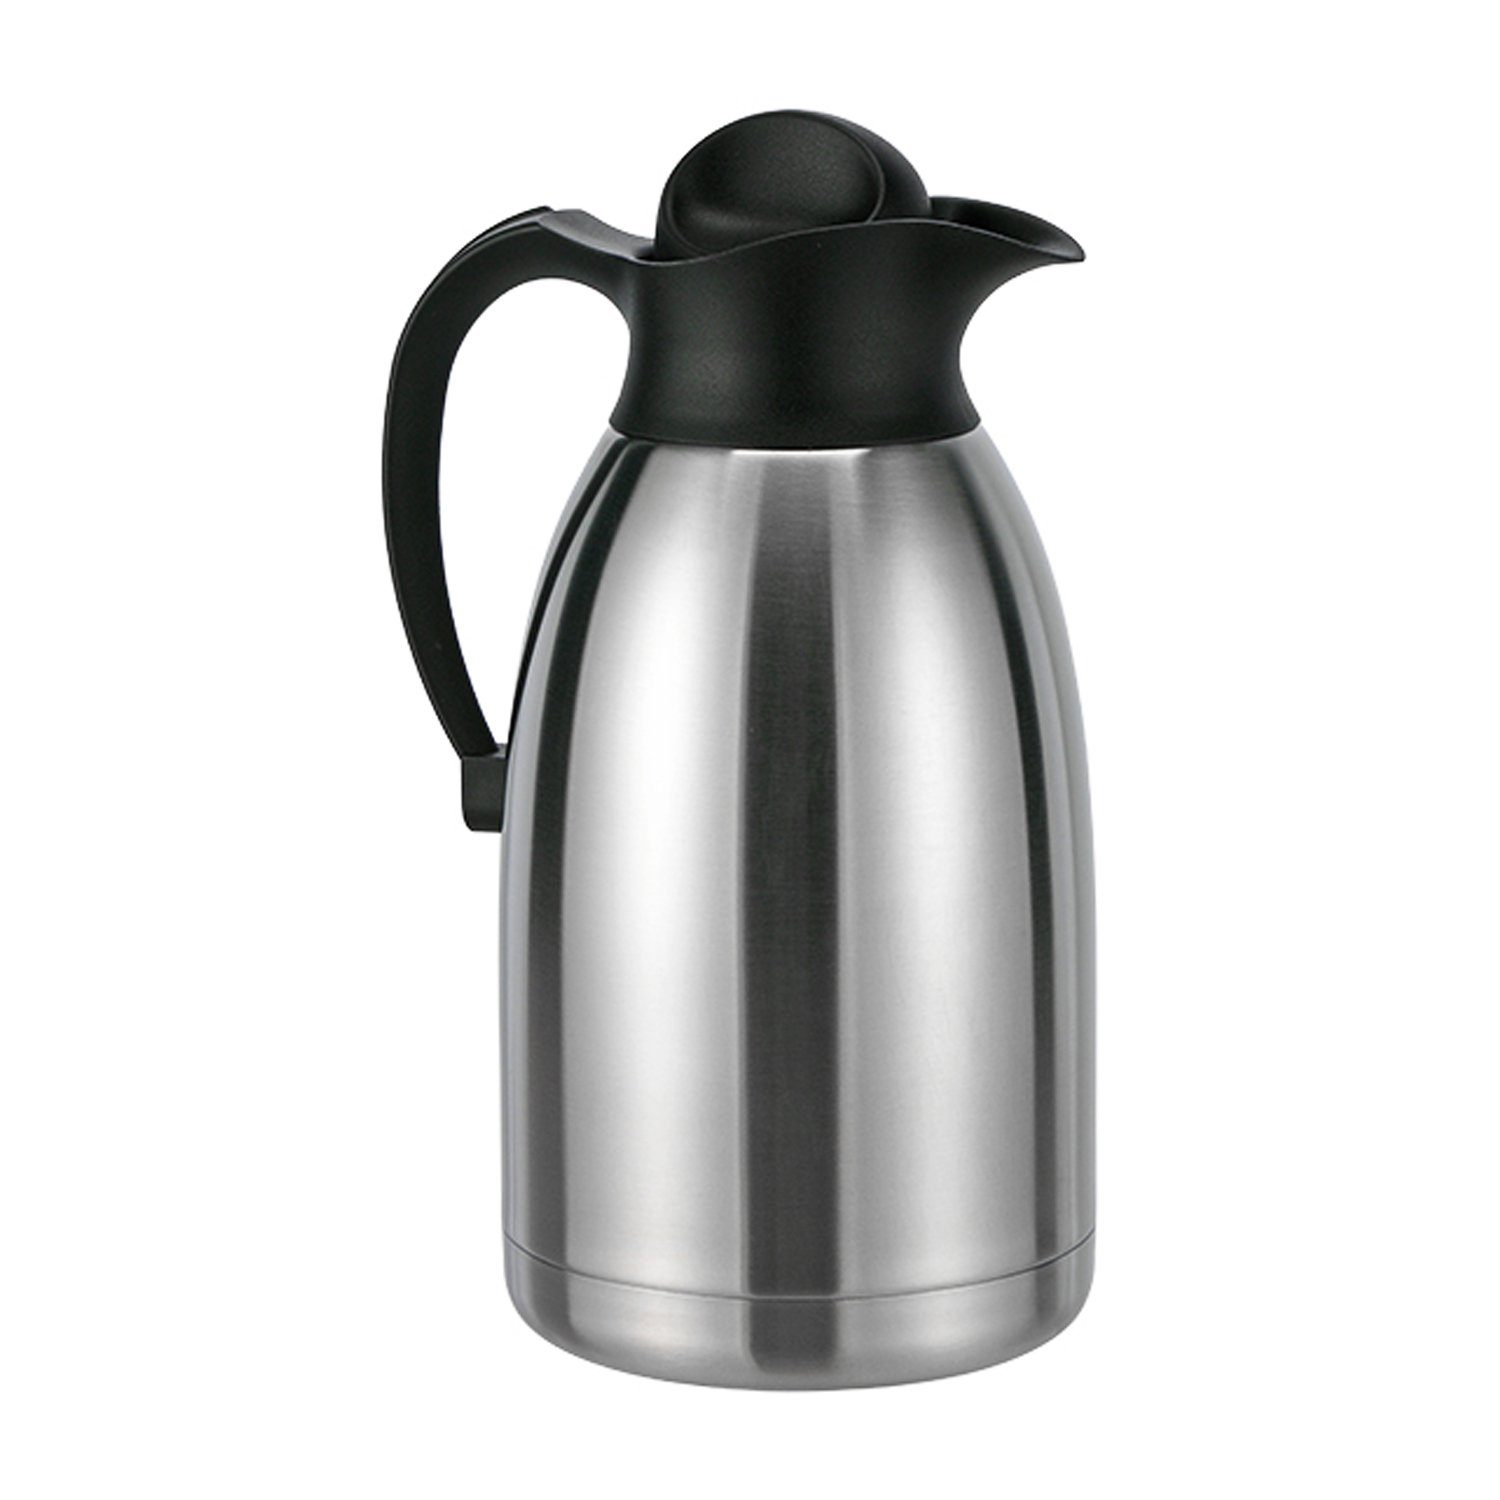 Mojawo Thermobehälter 2 Liter Edelstahl Kaffeekanne Thermoskanne Isolierkanne Doppelwandig